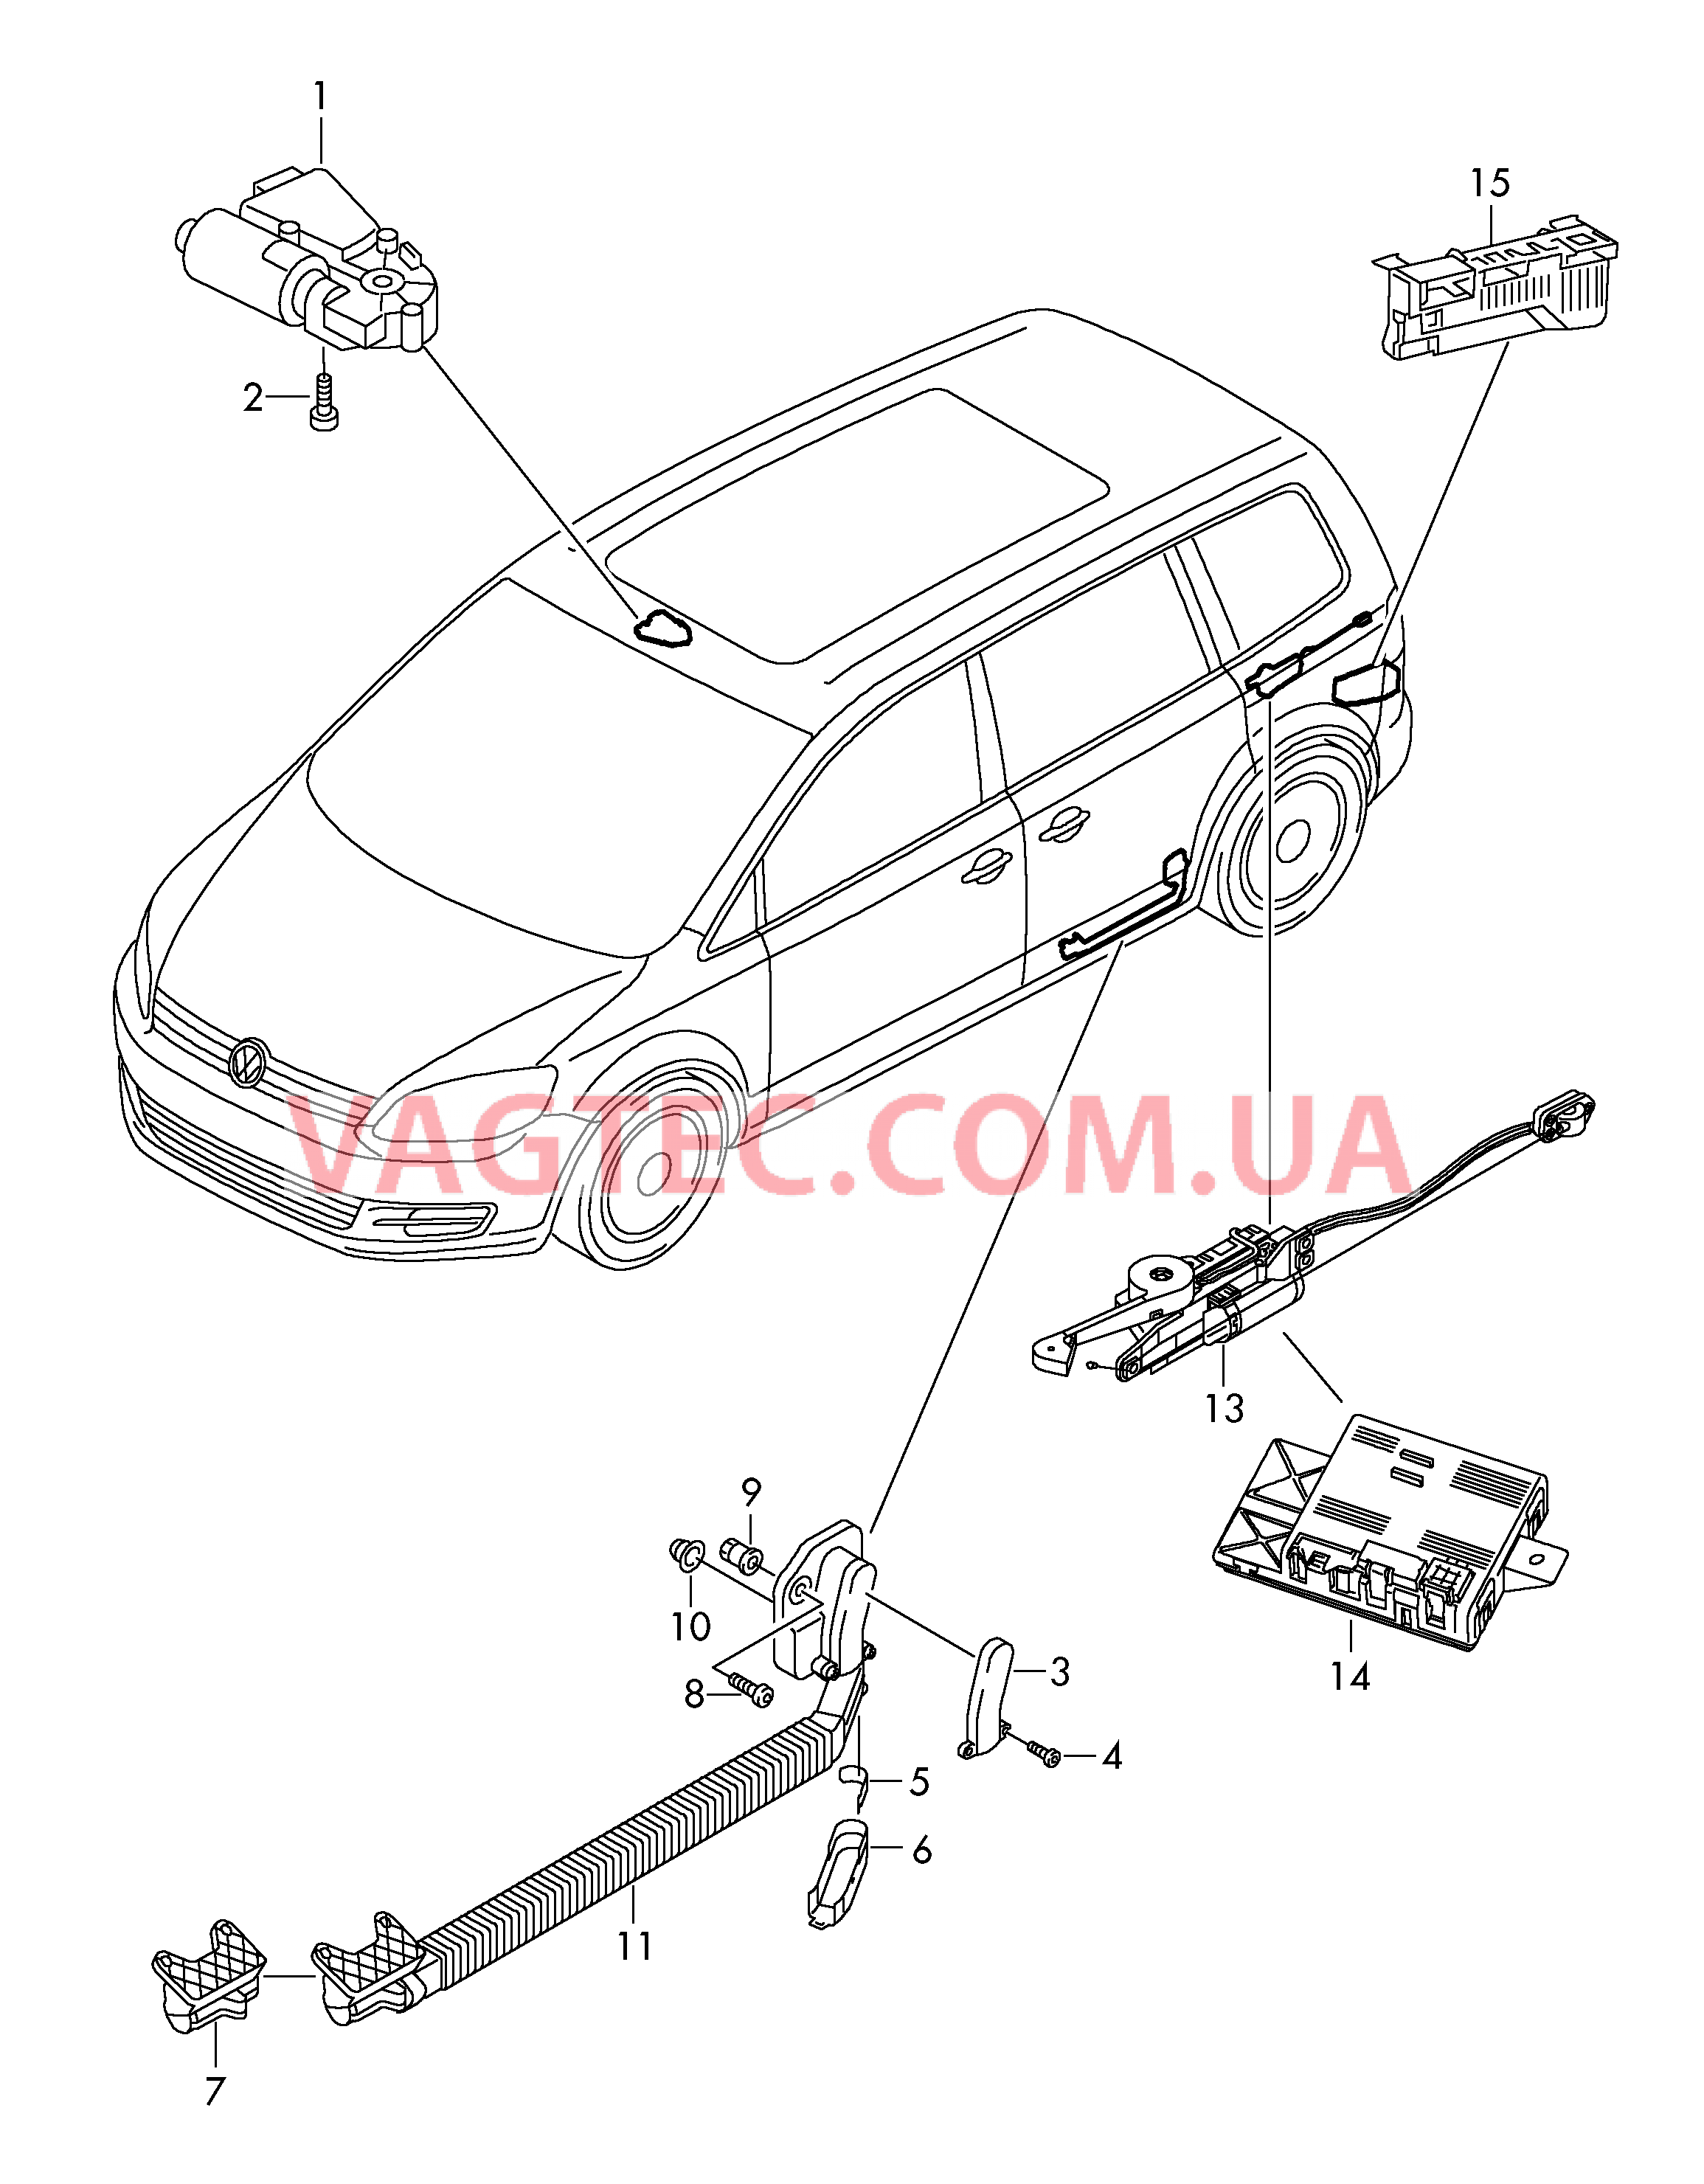 Мотор привода люка Электродетали для сдвижной двери  Блок управления доводчика  для SEAT Alhambra 2018